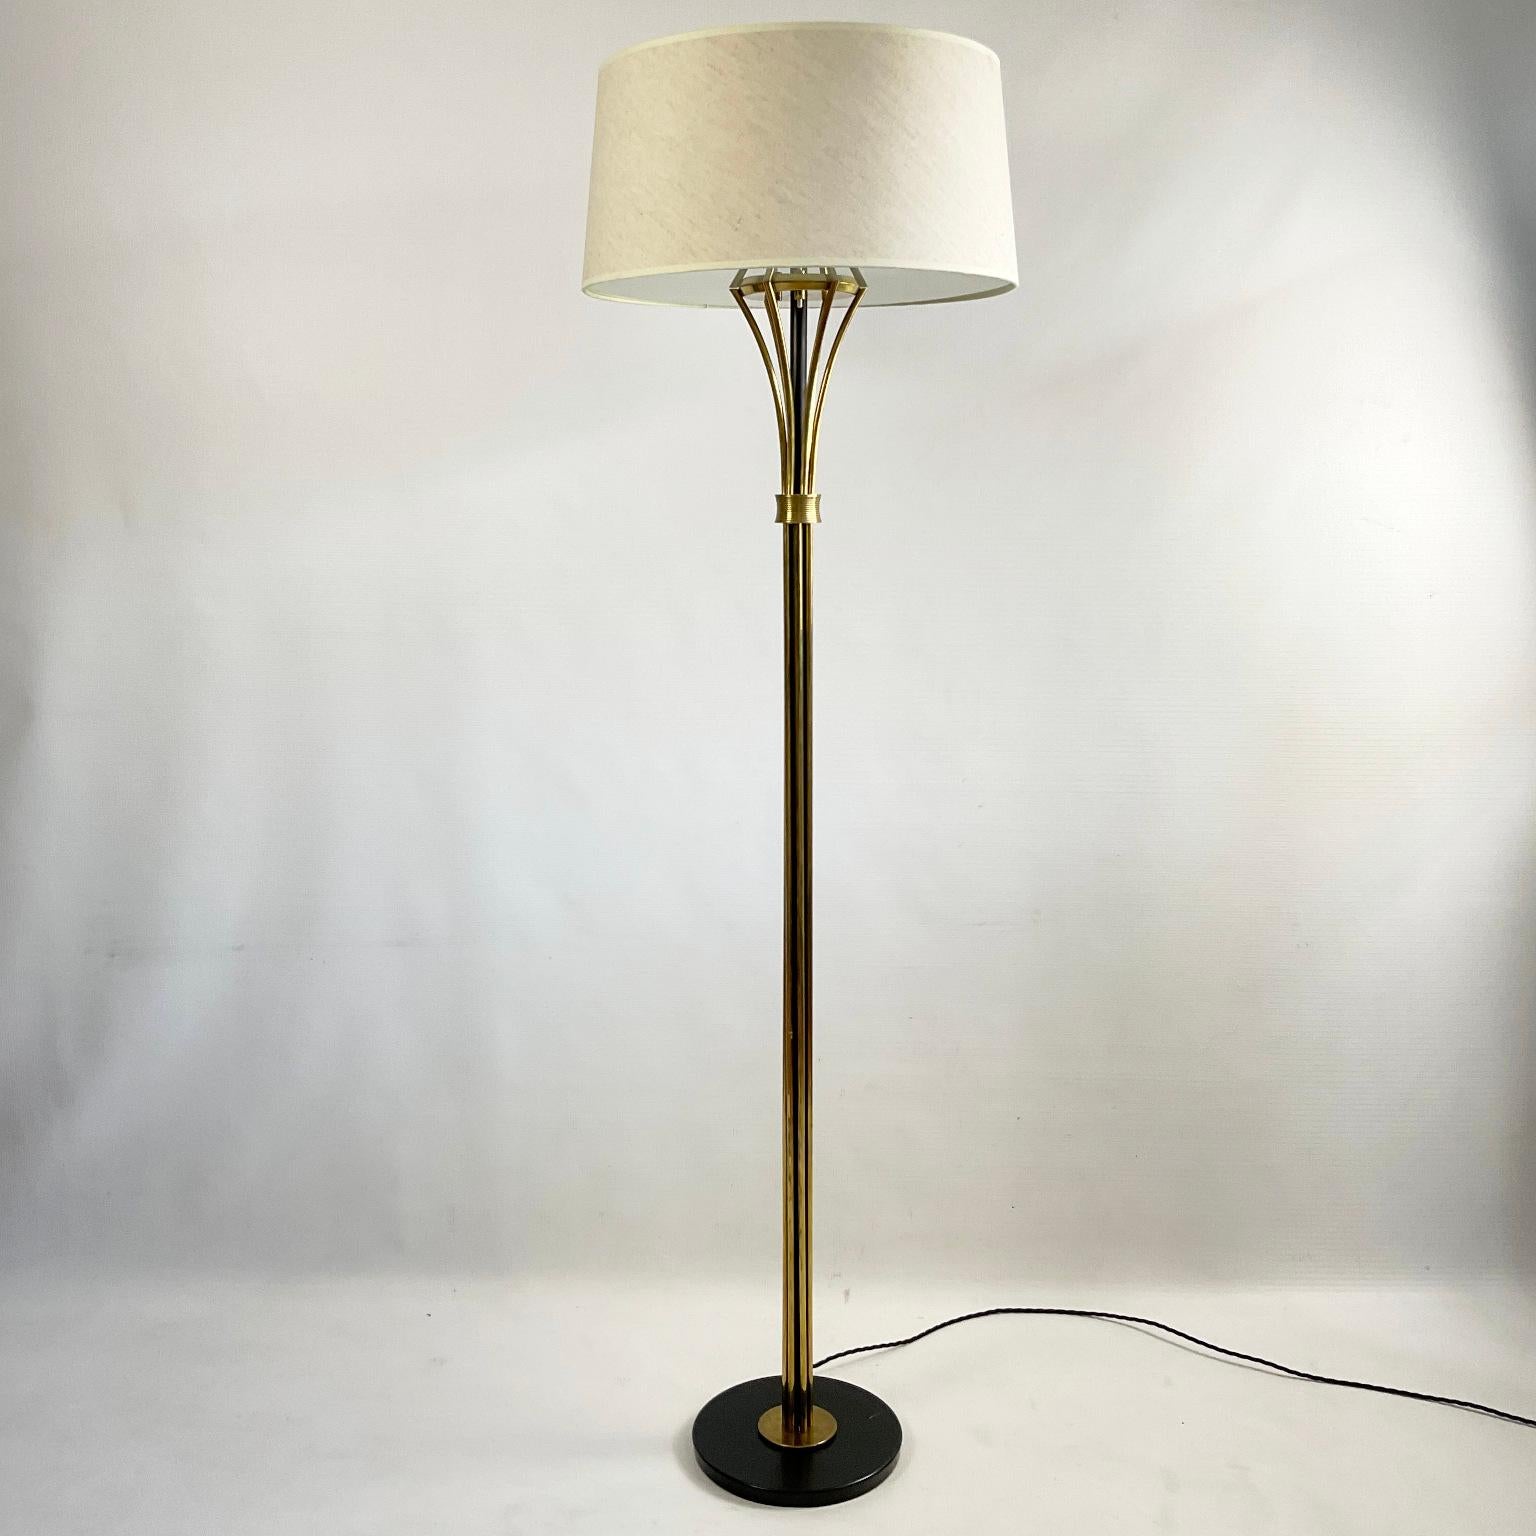 Ce lampadaire en laiton des années 1950 a été fabriqué et produit par la Maison Arlus France.
Le corps de la lampe est composé d'une colonne en laiton, avec six tiges tubulaires en laiton fixées sur une base en métal noir.
Comprenant trois lampes